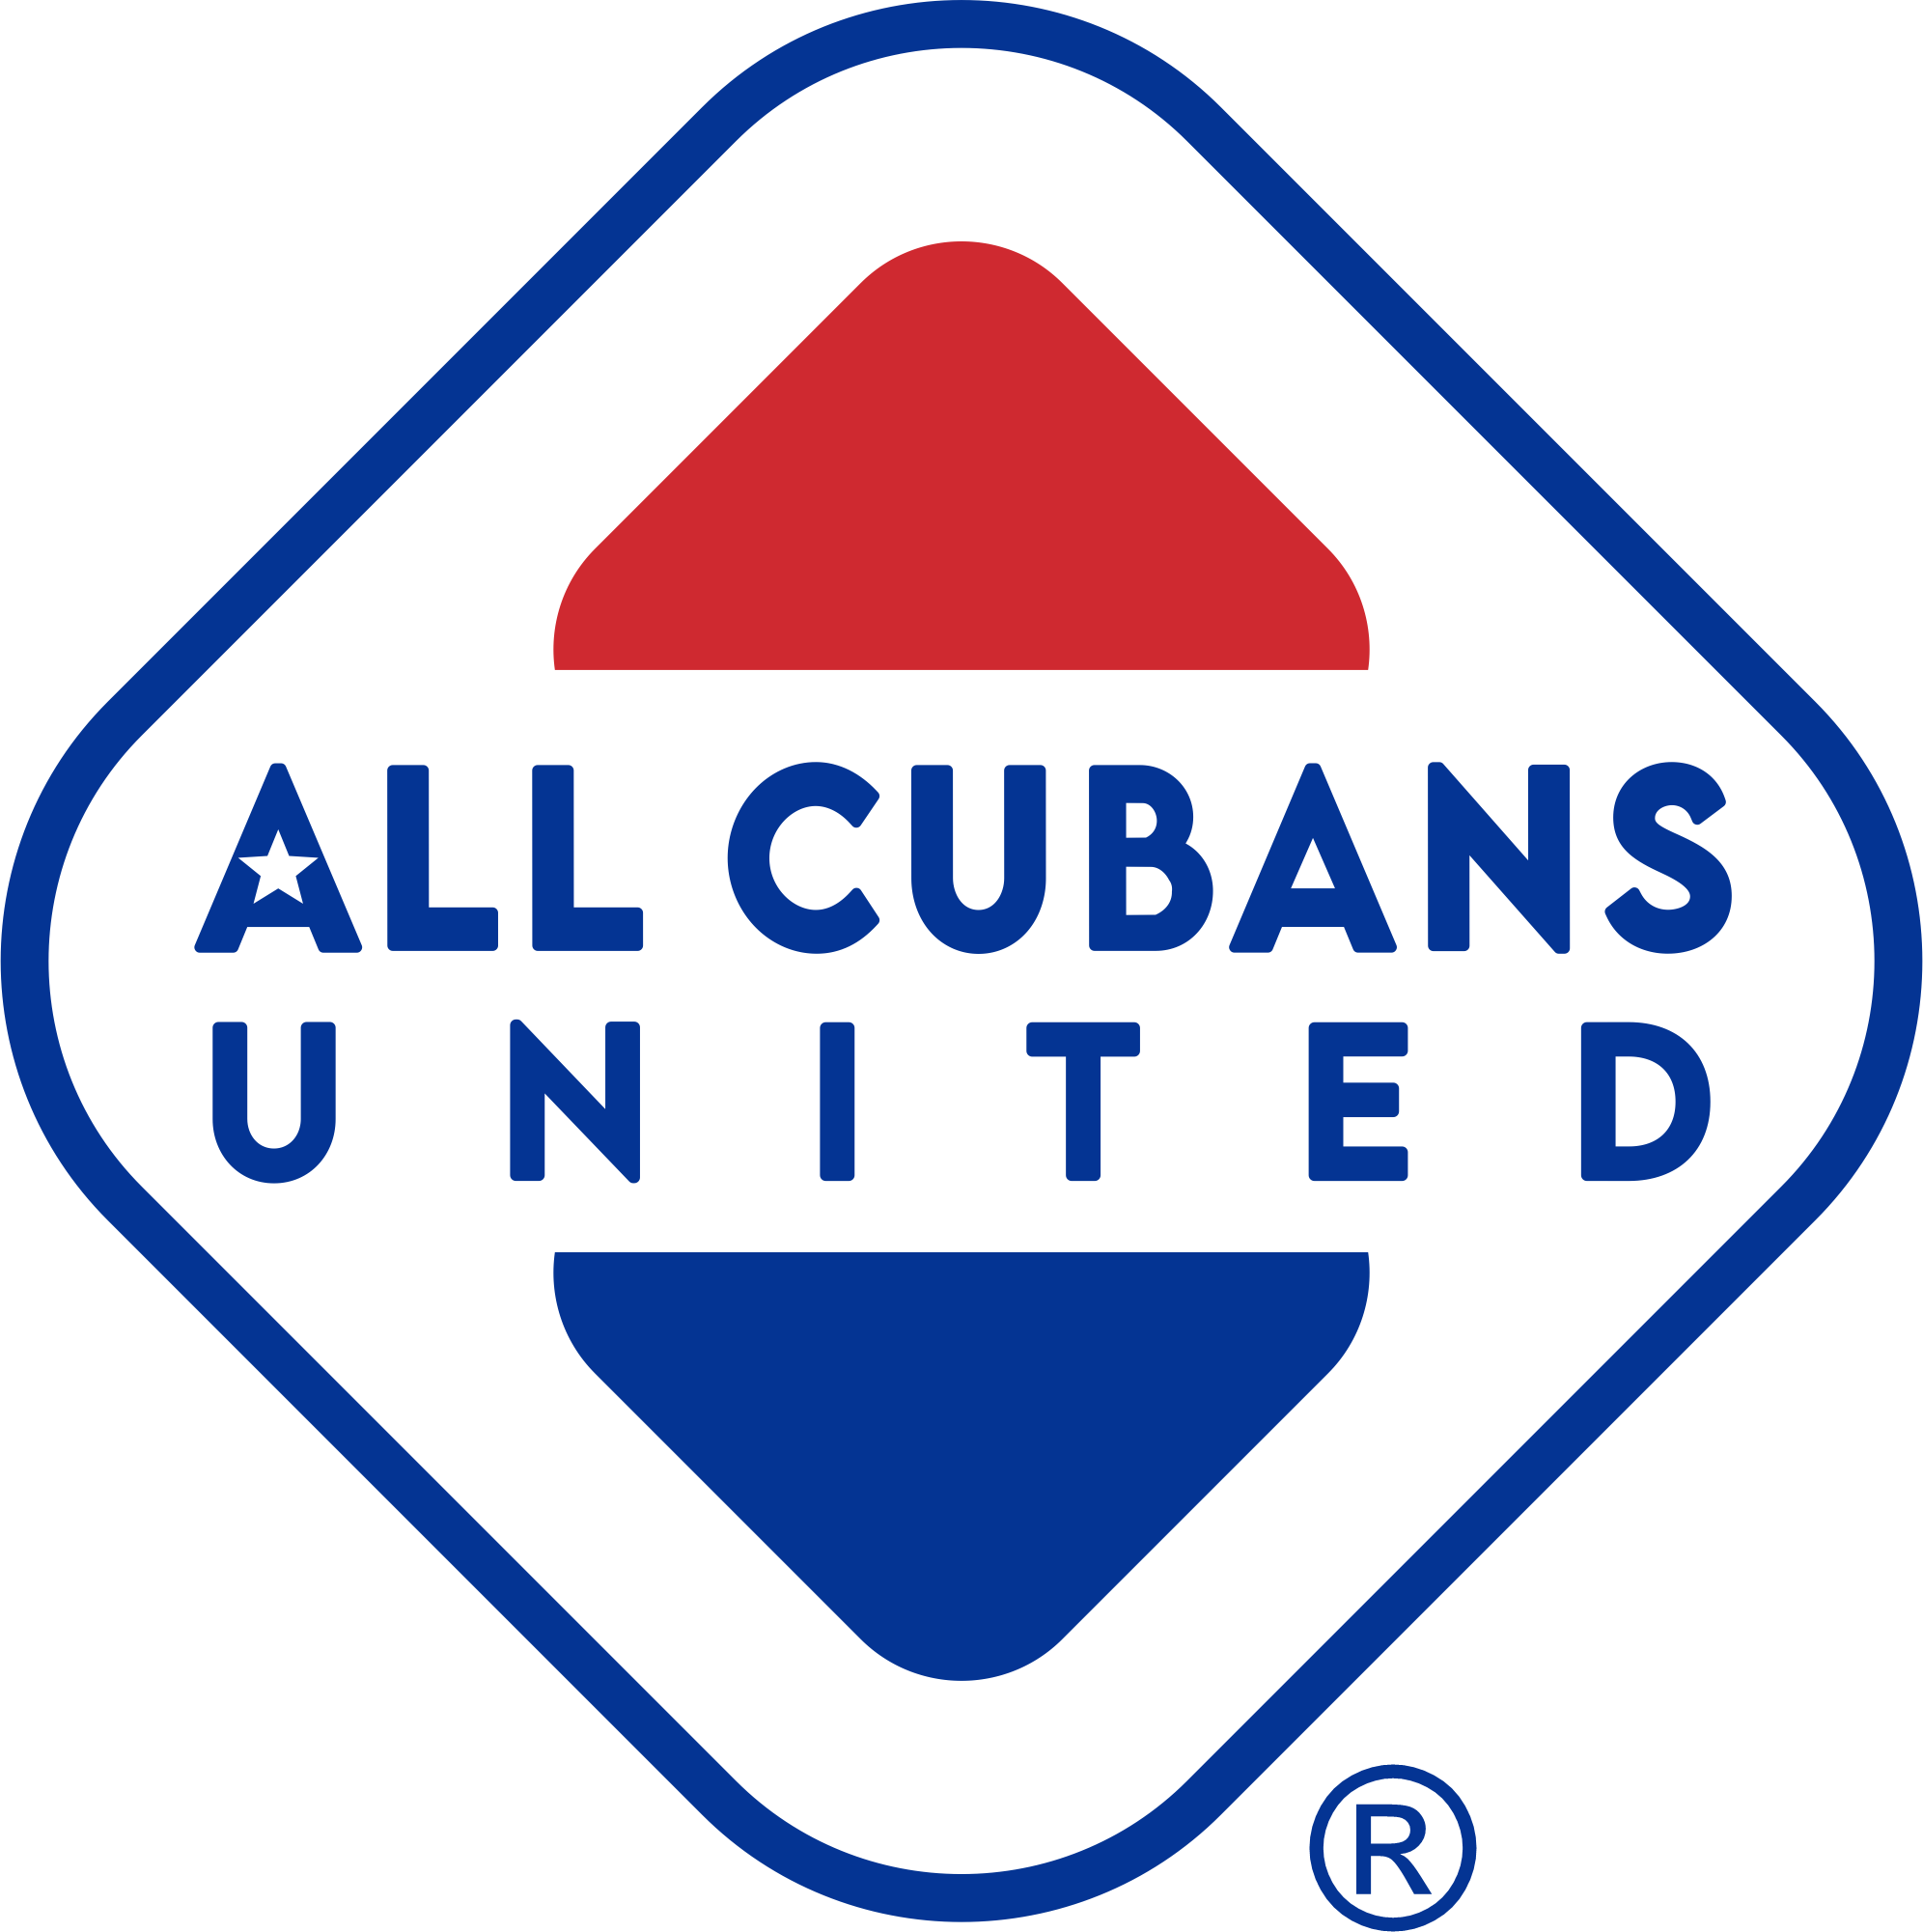 ALL CUBANS UNITED